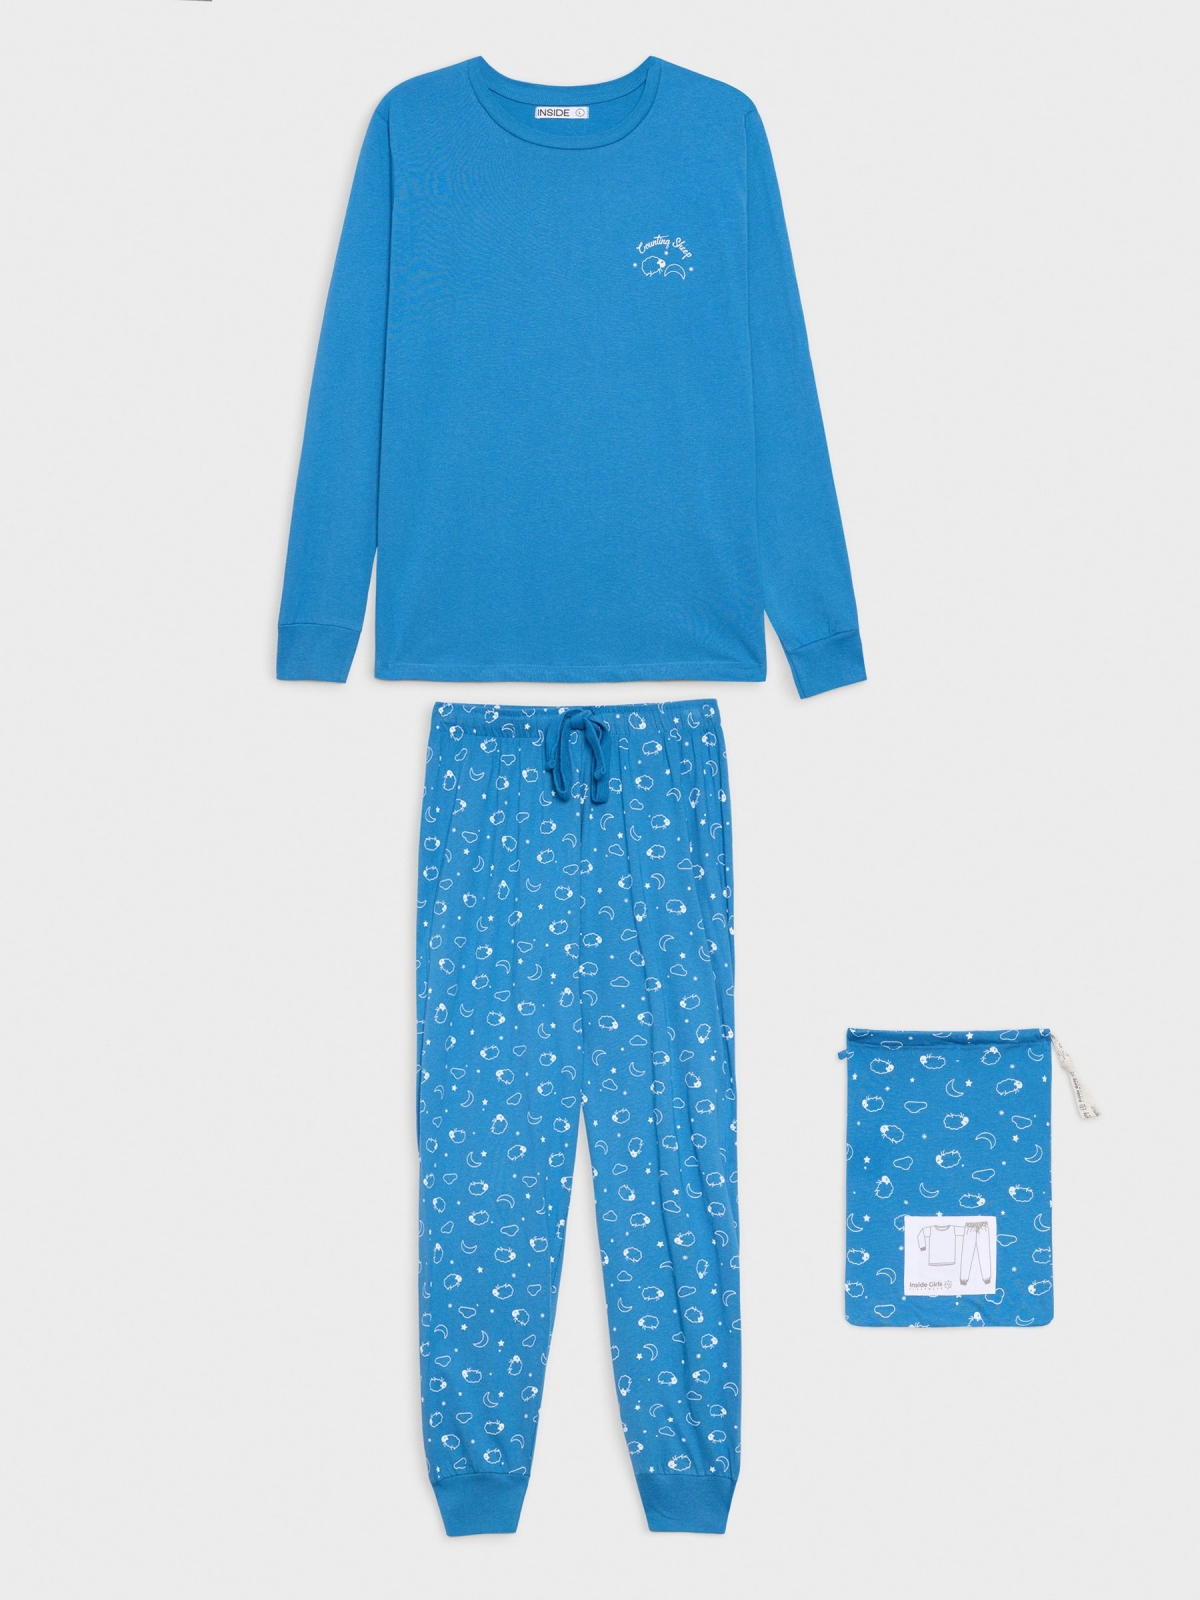 Pijama Country Sleep azul marino